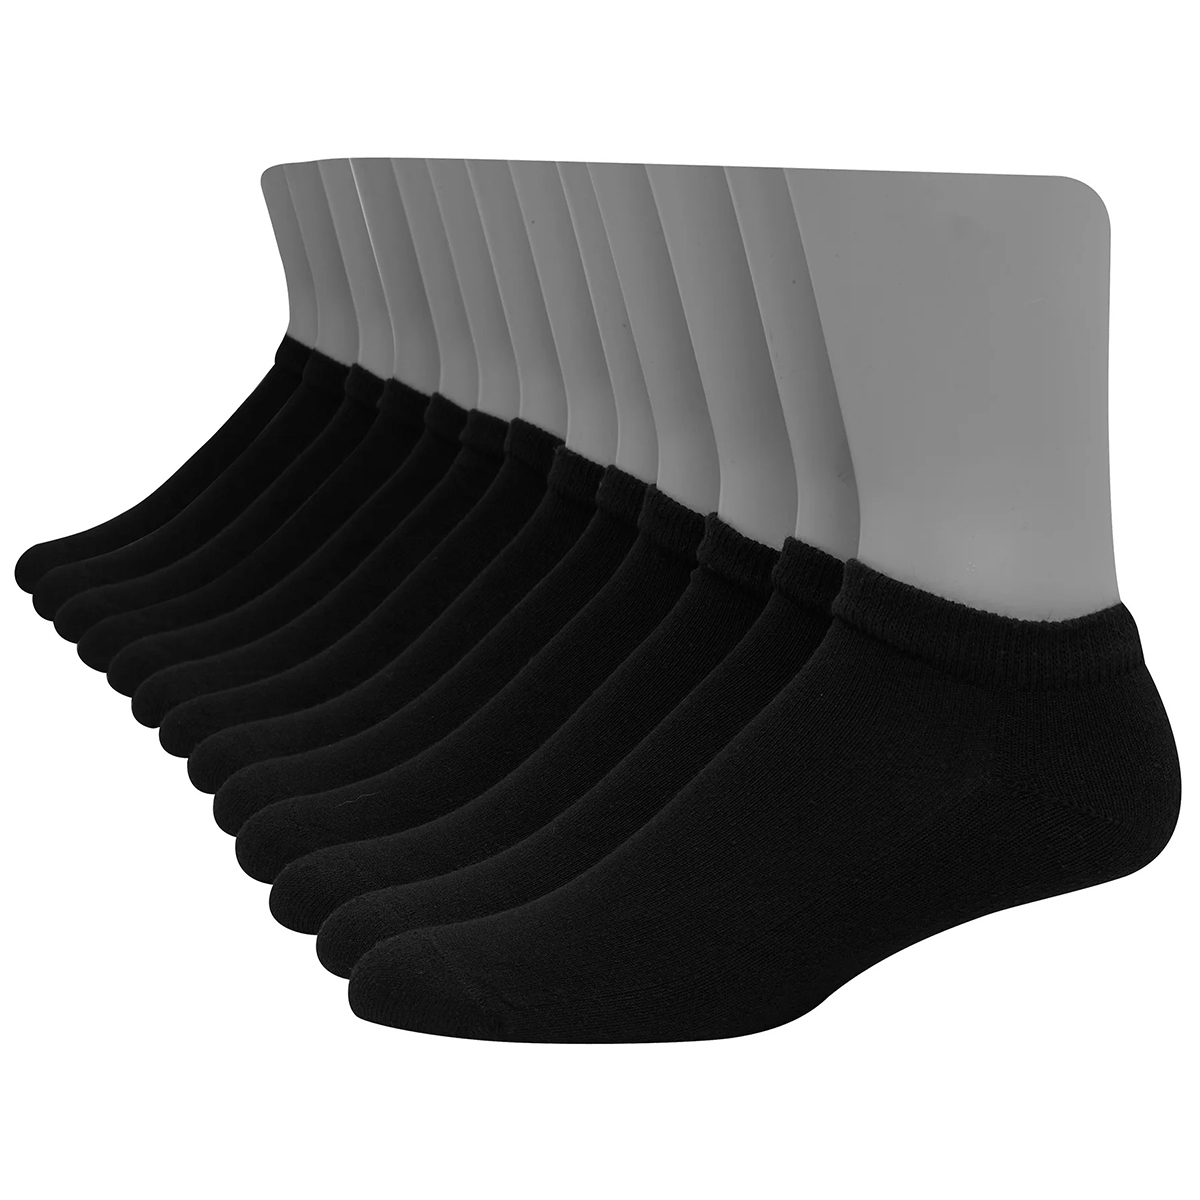 Hanes Men's Ultimate Low Cut Socks, 12-Pack